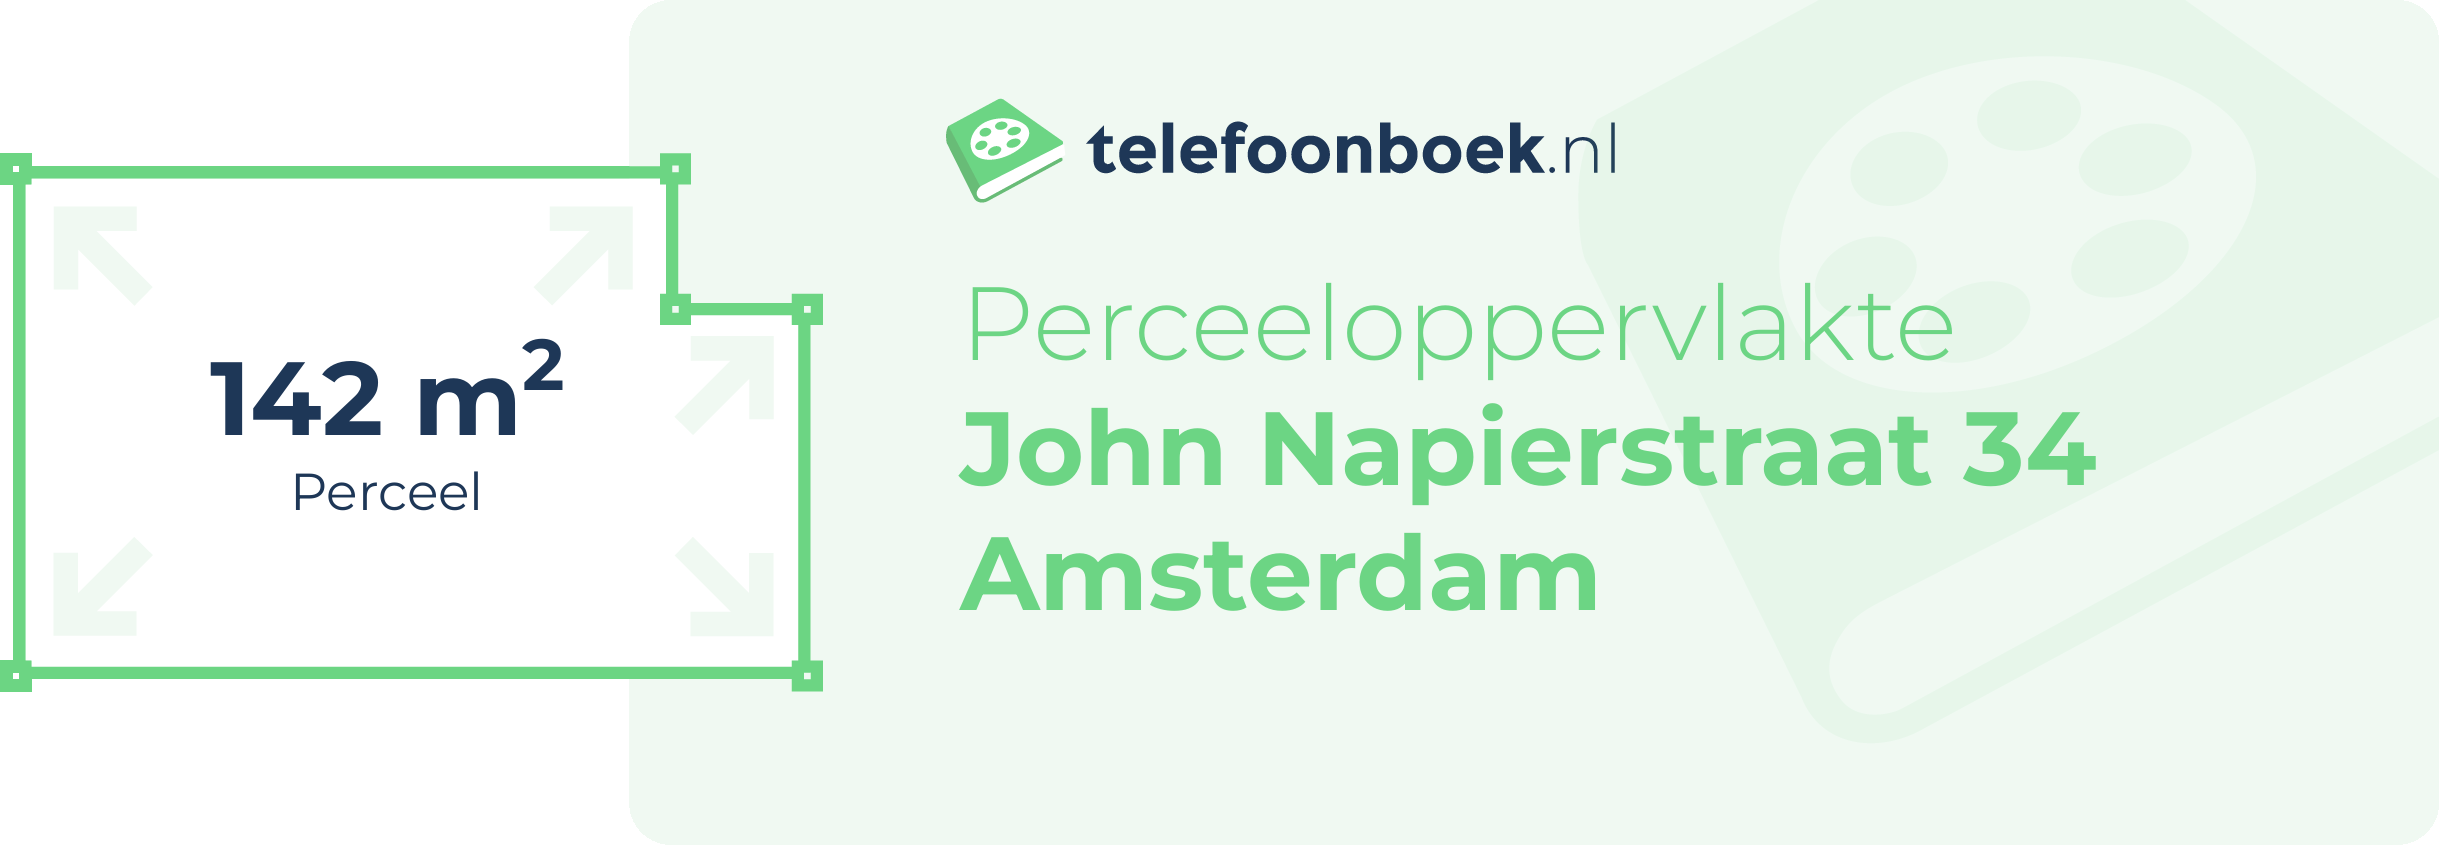 Perceeloppervlakte John Napierstraat 34 Amsterdam